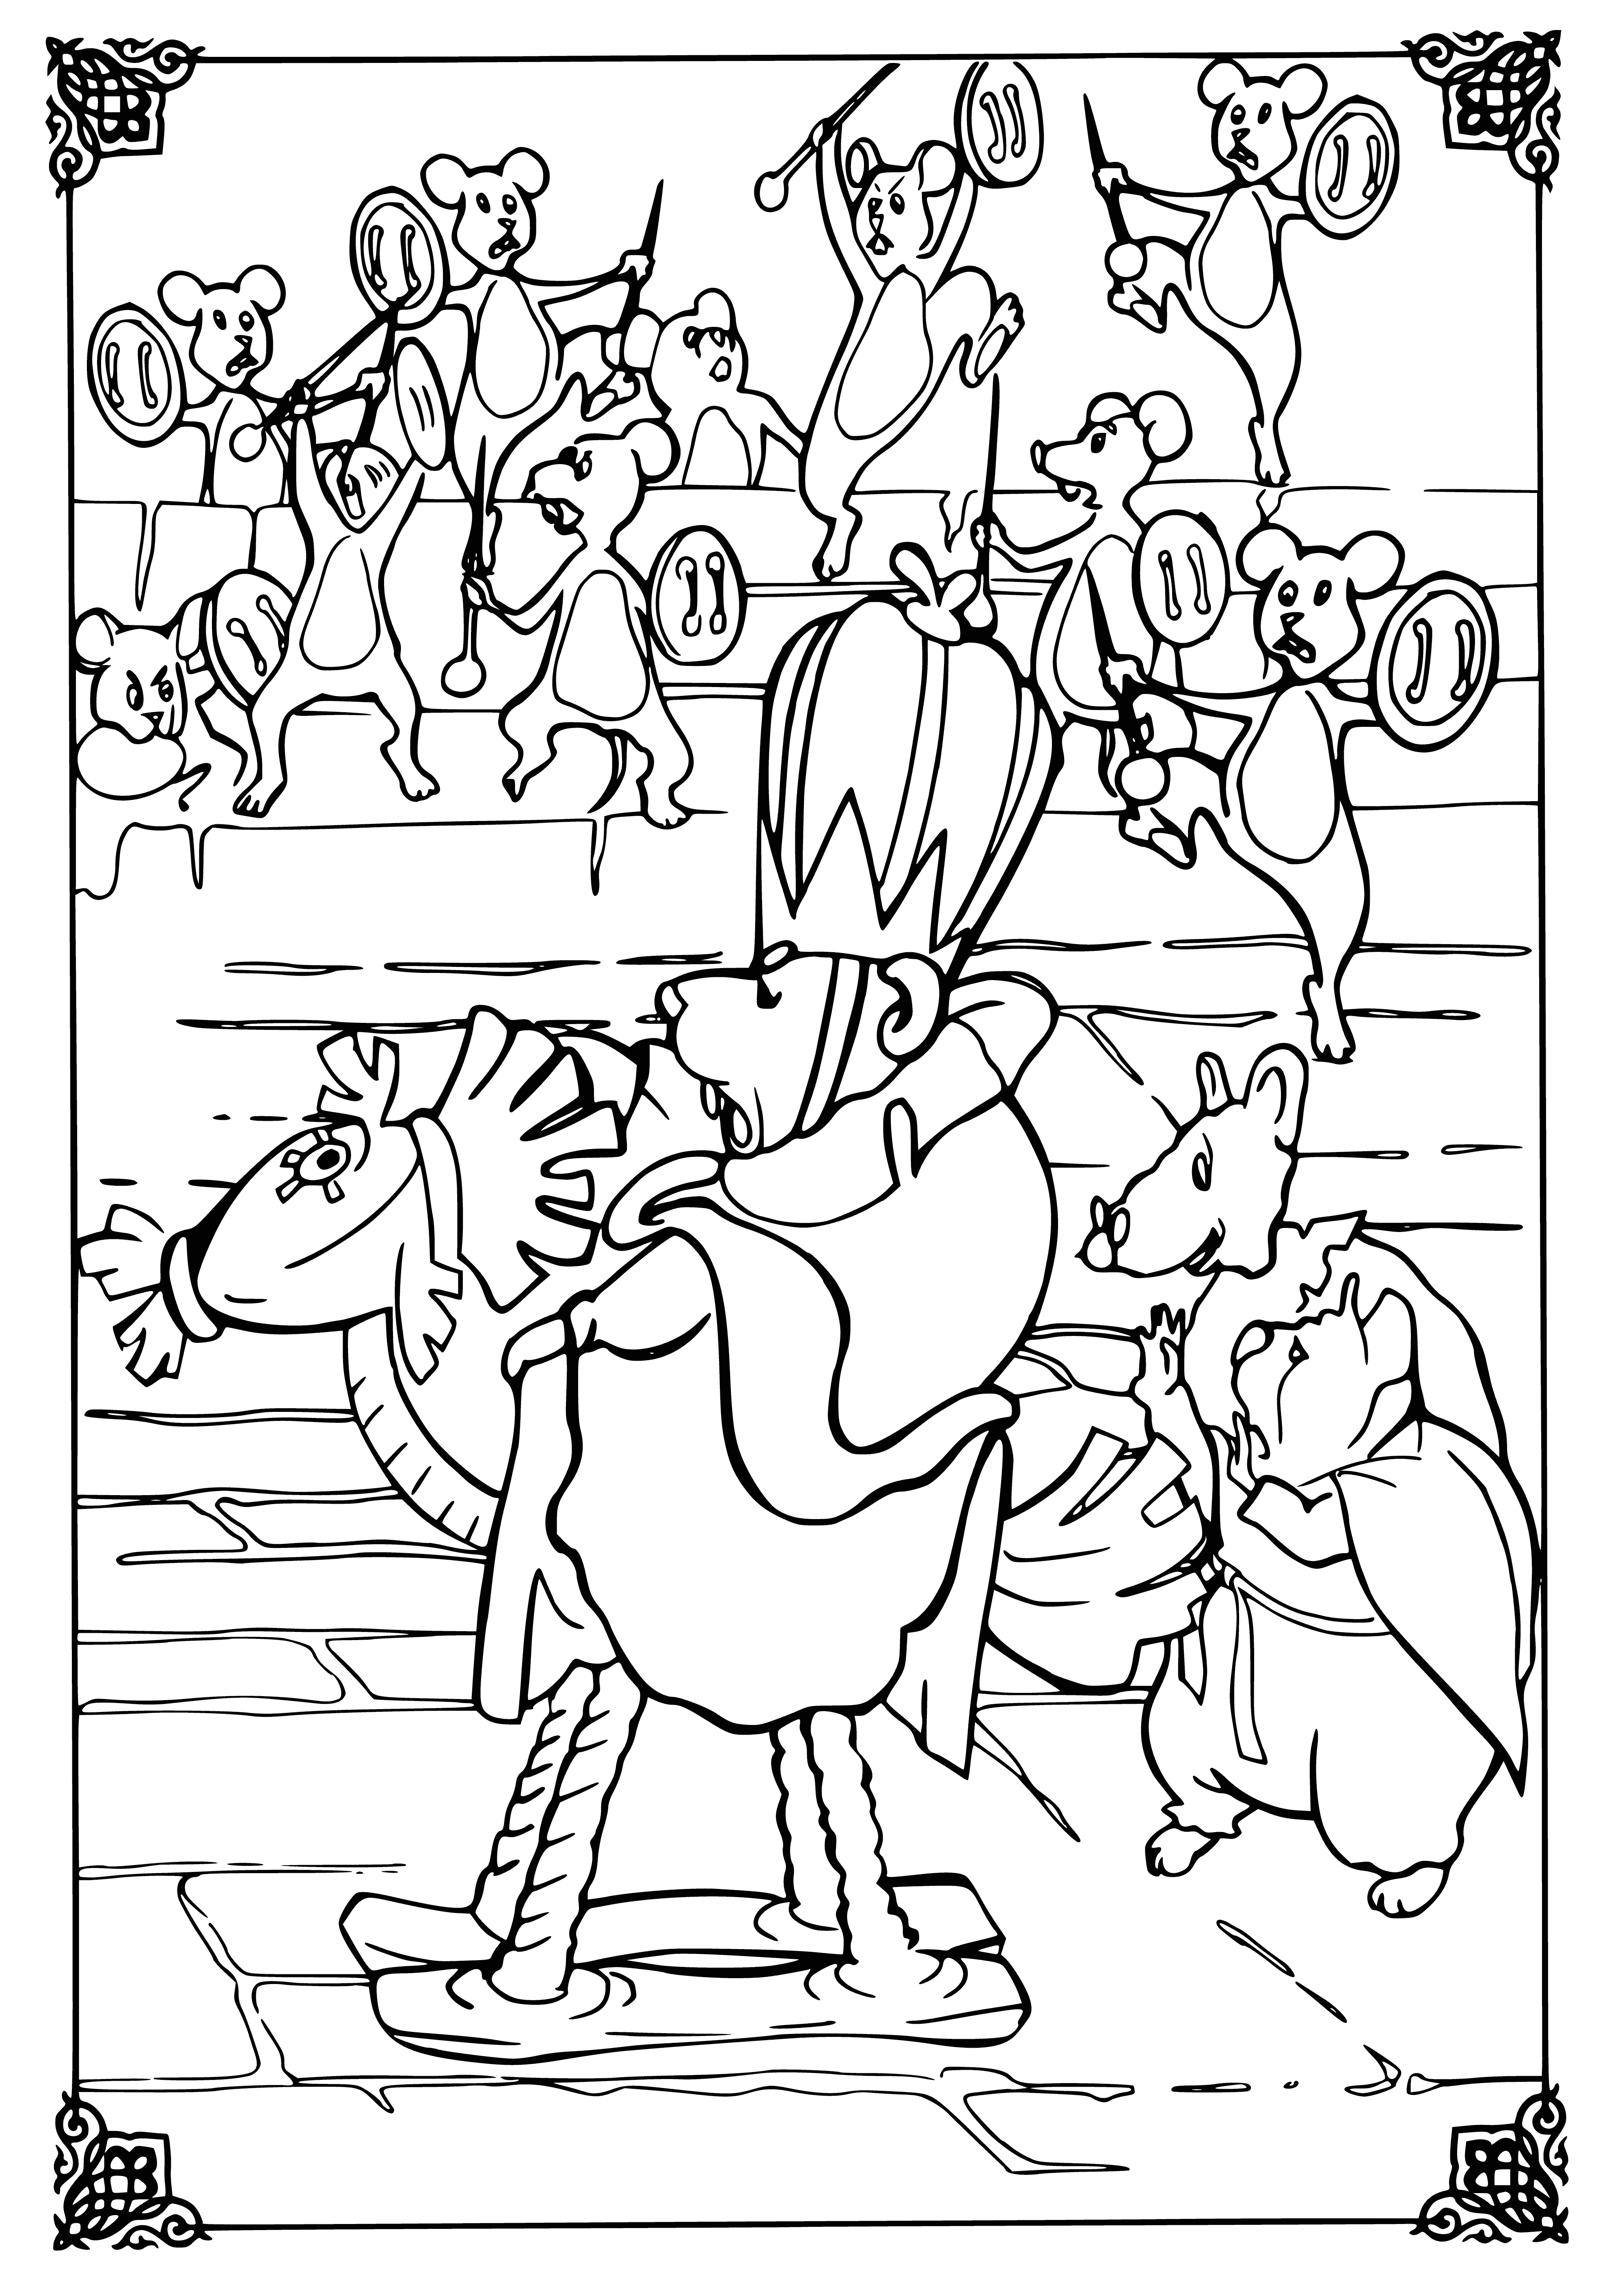 Fare Kralının Ordusu boyama sayfası